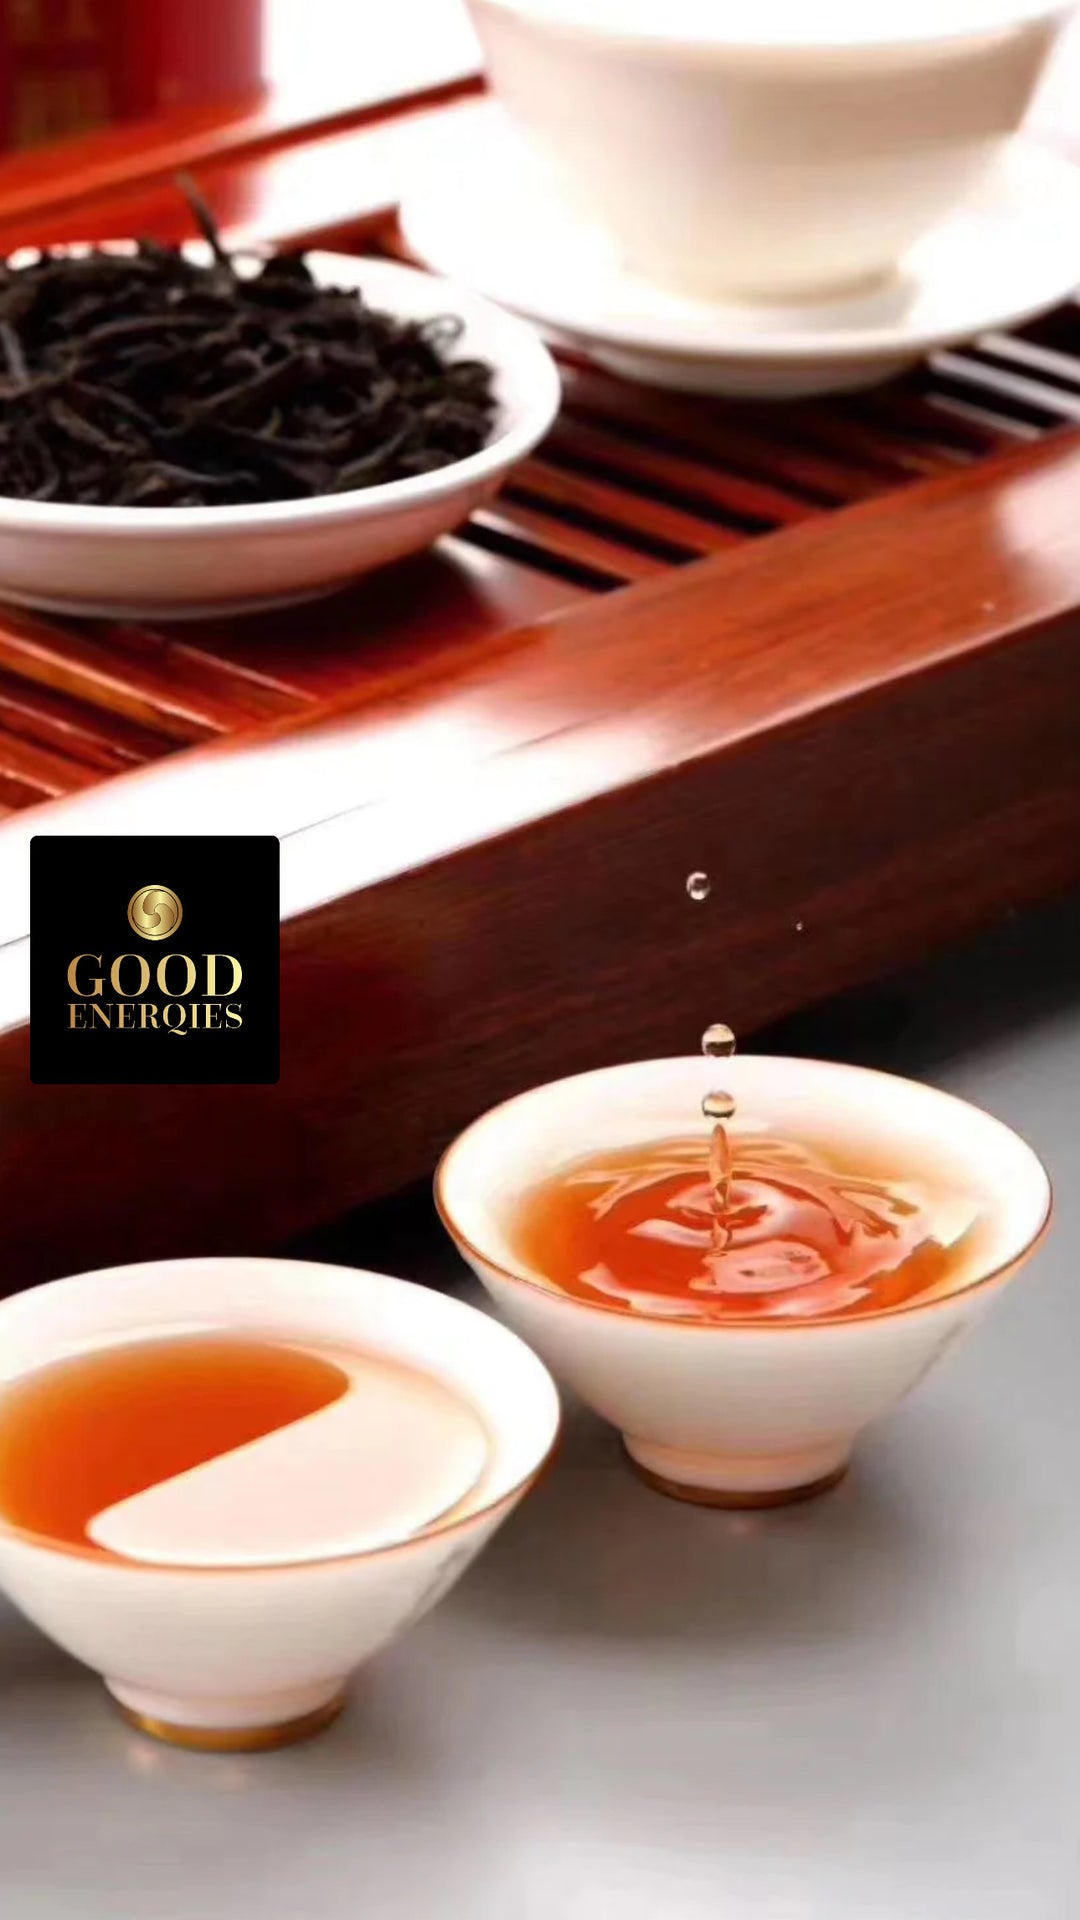 3. ☲ Sunnyvale Internet Garden • Da Hong Pao • Big Red Robe • Oolong Tea • EU Organic Tea